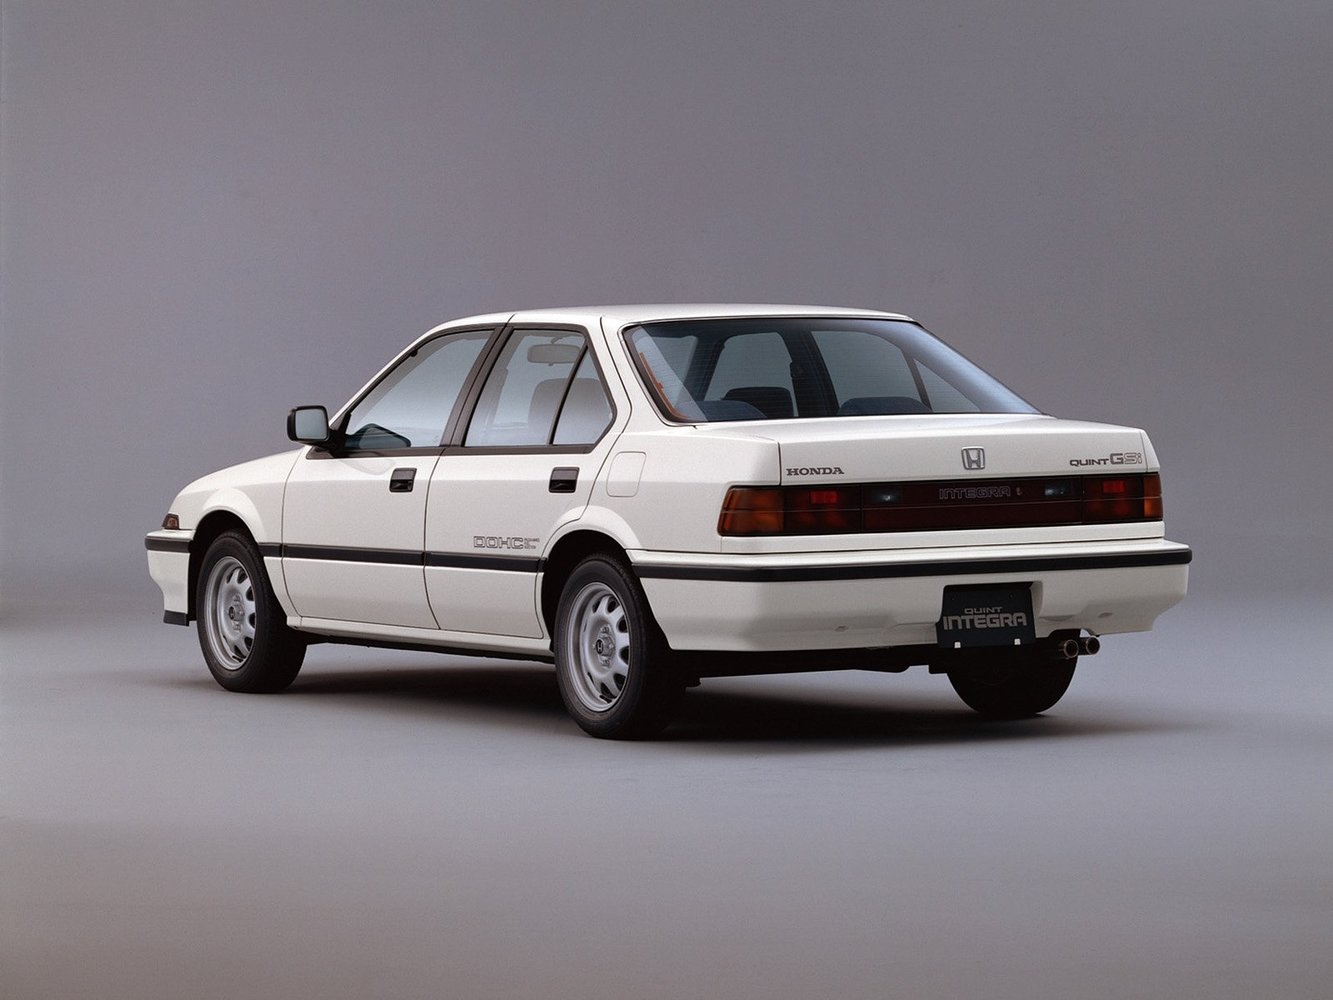 седан Honda Integra 1985 - 1989г выпуска модификация 1.5 AT (86 л.с.)